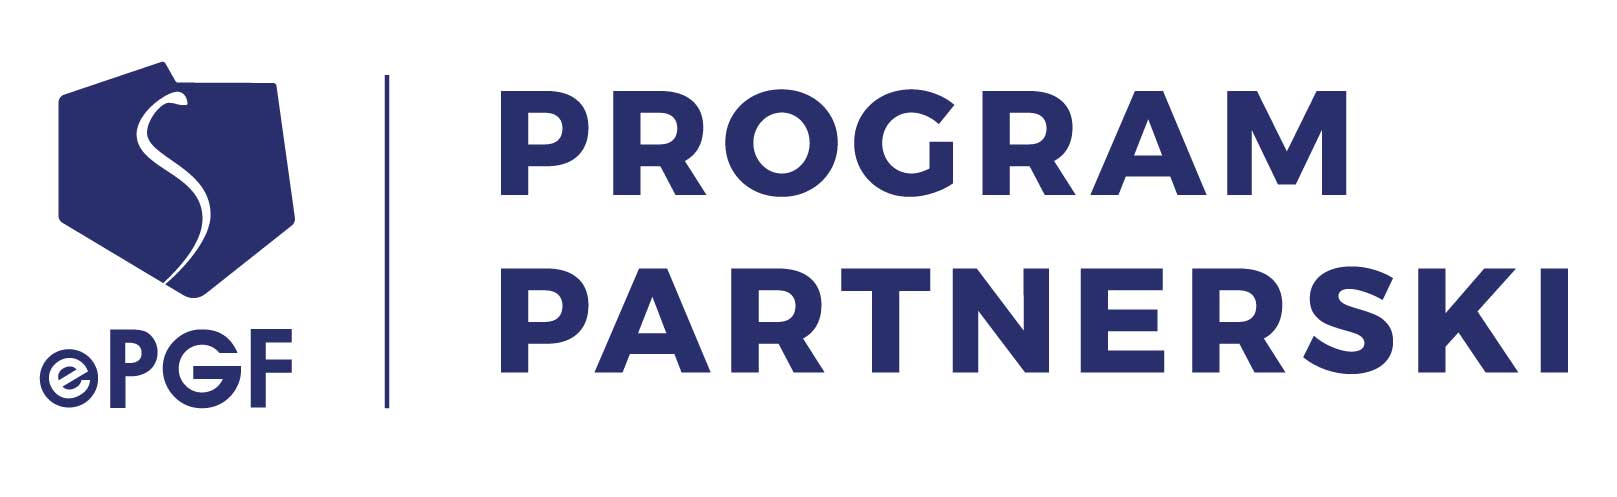 m logo program partnerski